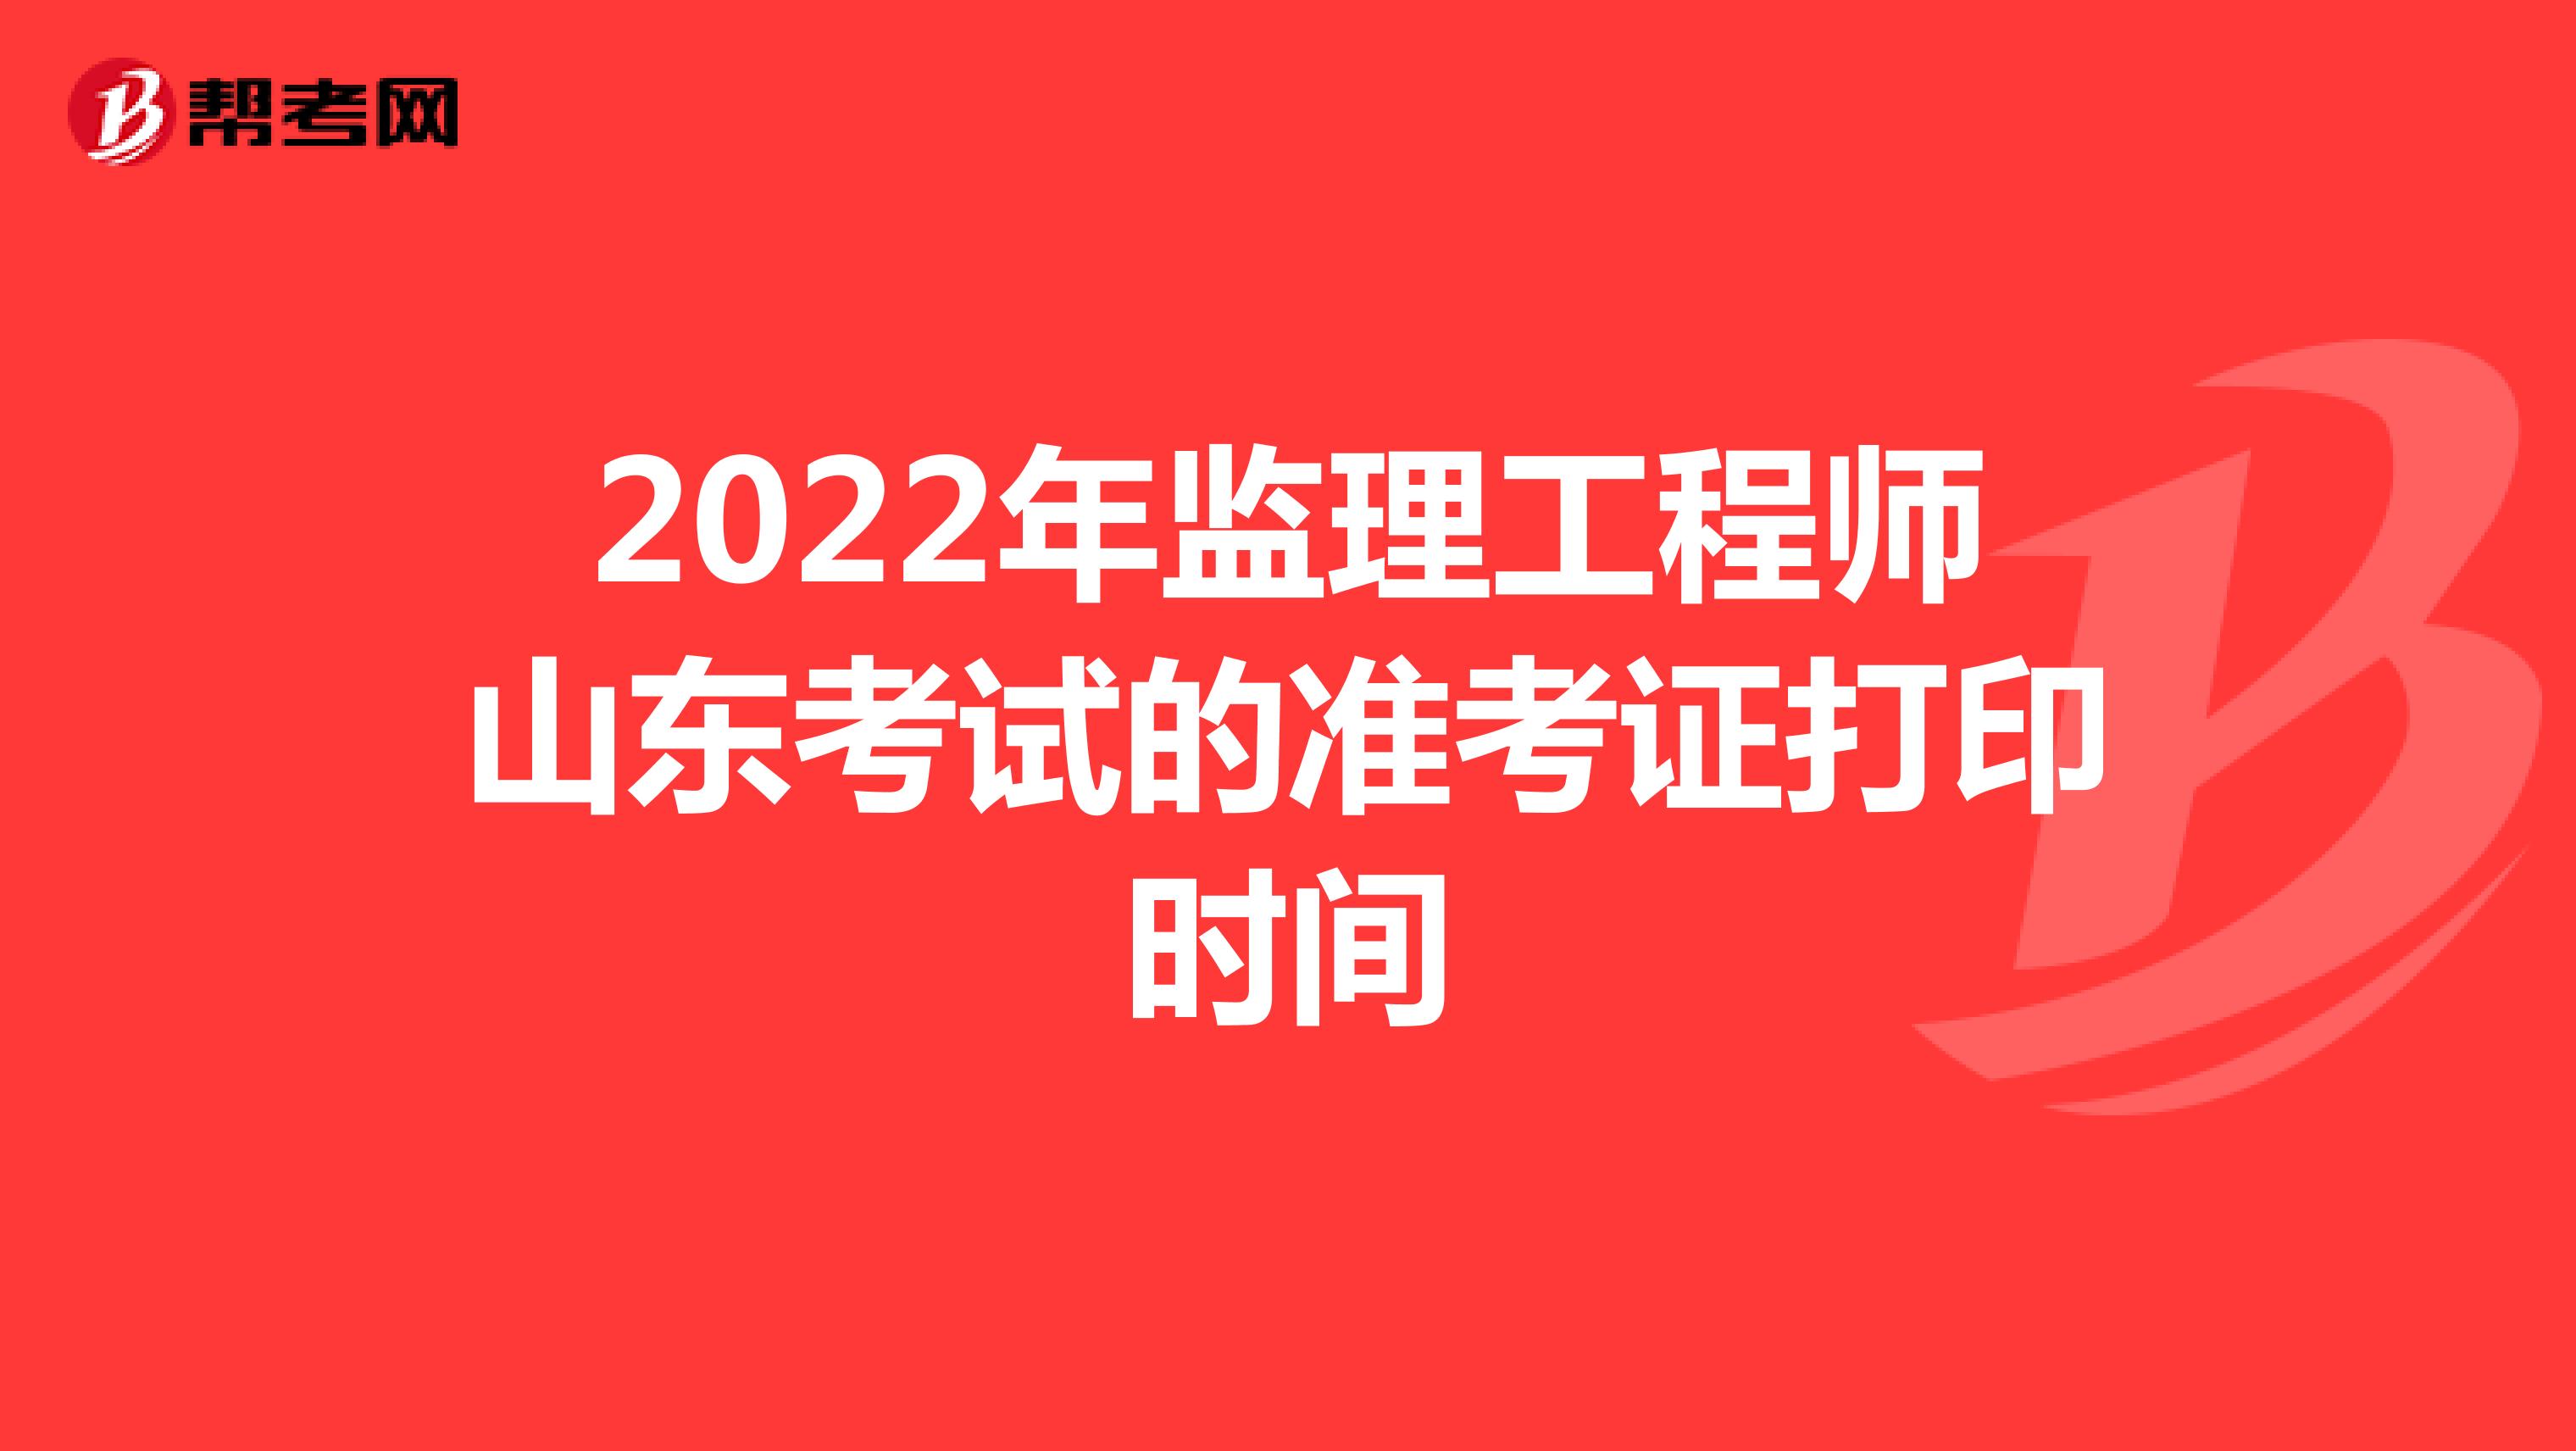 2022年监理工程师山东考试的准考证打印时间